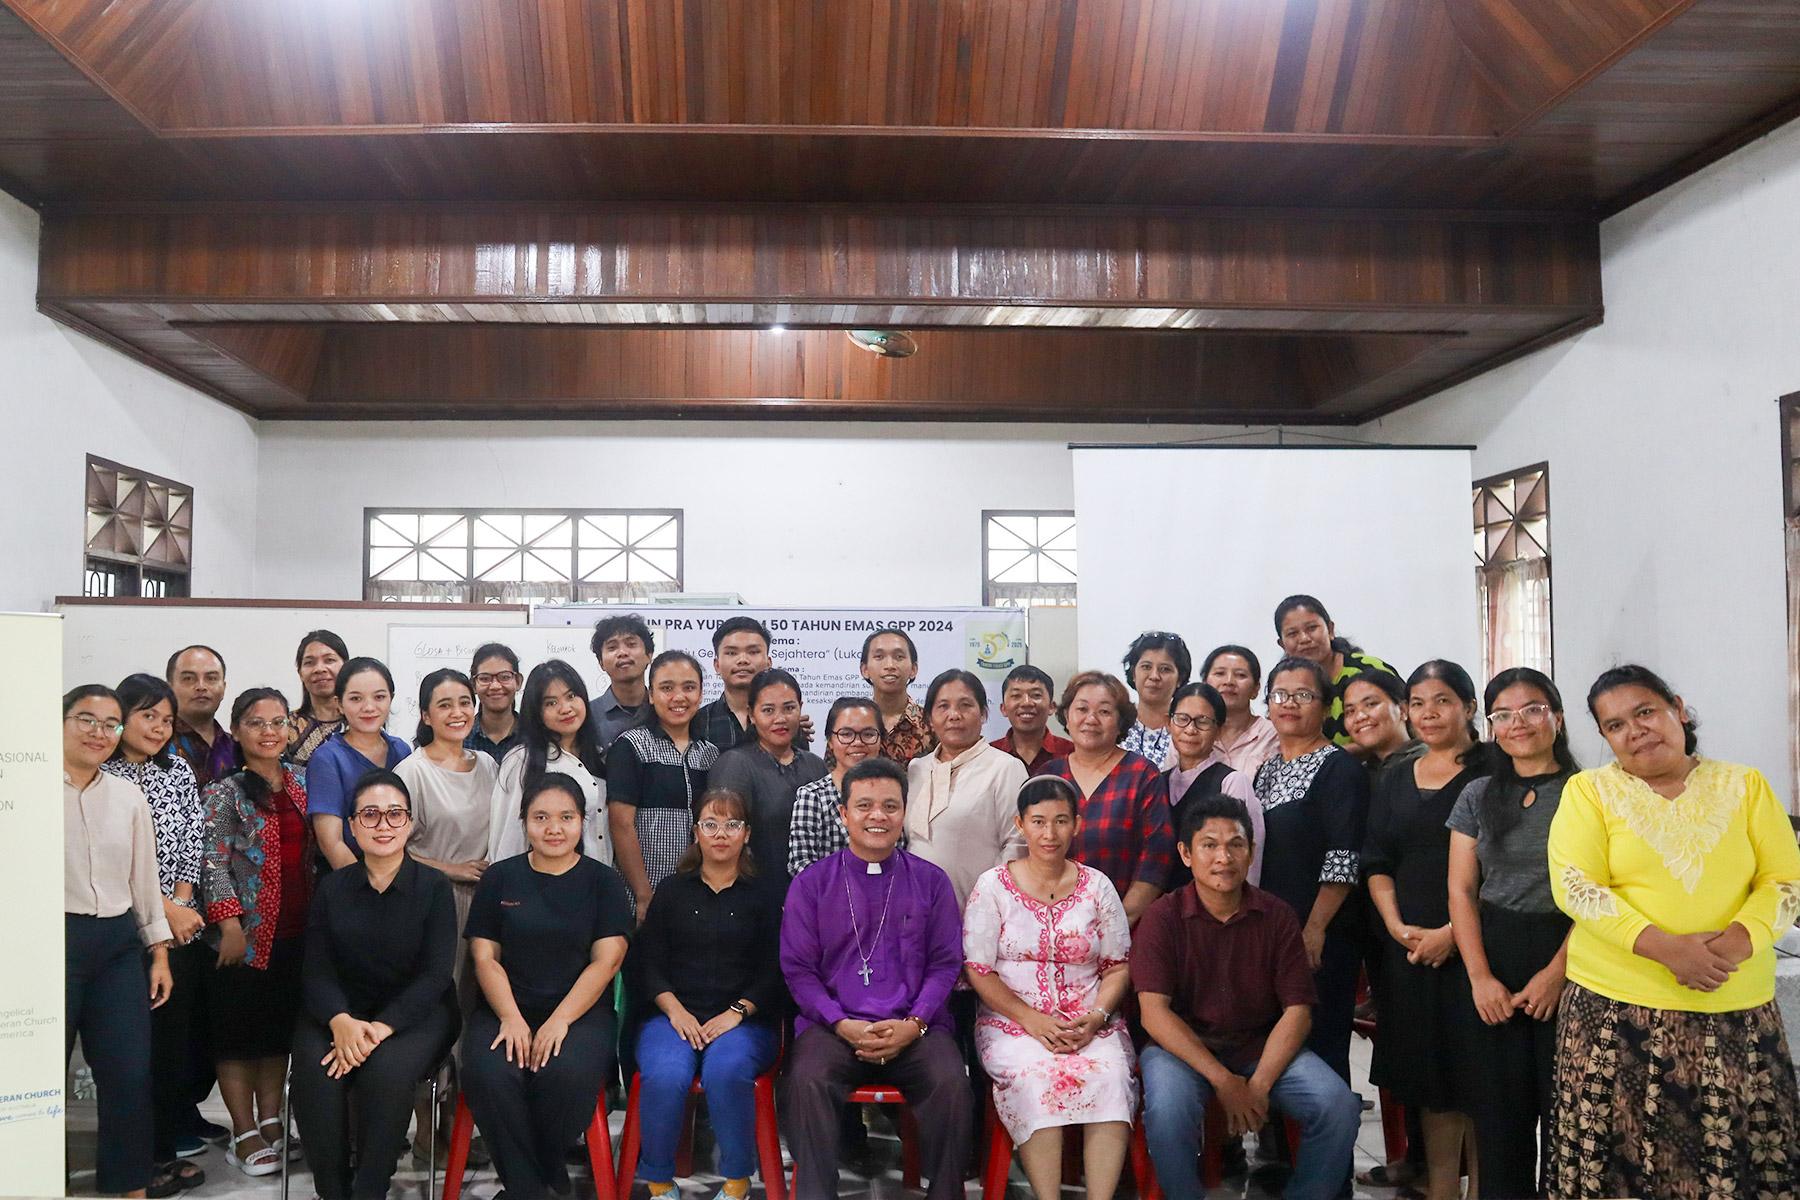 Teilnehmende und Vortragende des Workshops zur Schaffung einer inklusiven Kirche, die Menschen mit Behinderungen, insbesondere Gehörlose, willkommen heißt.